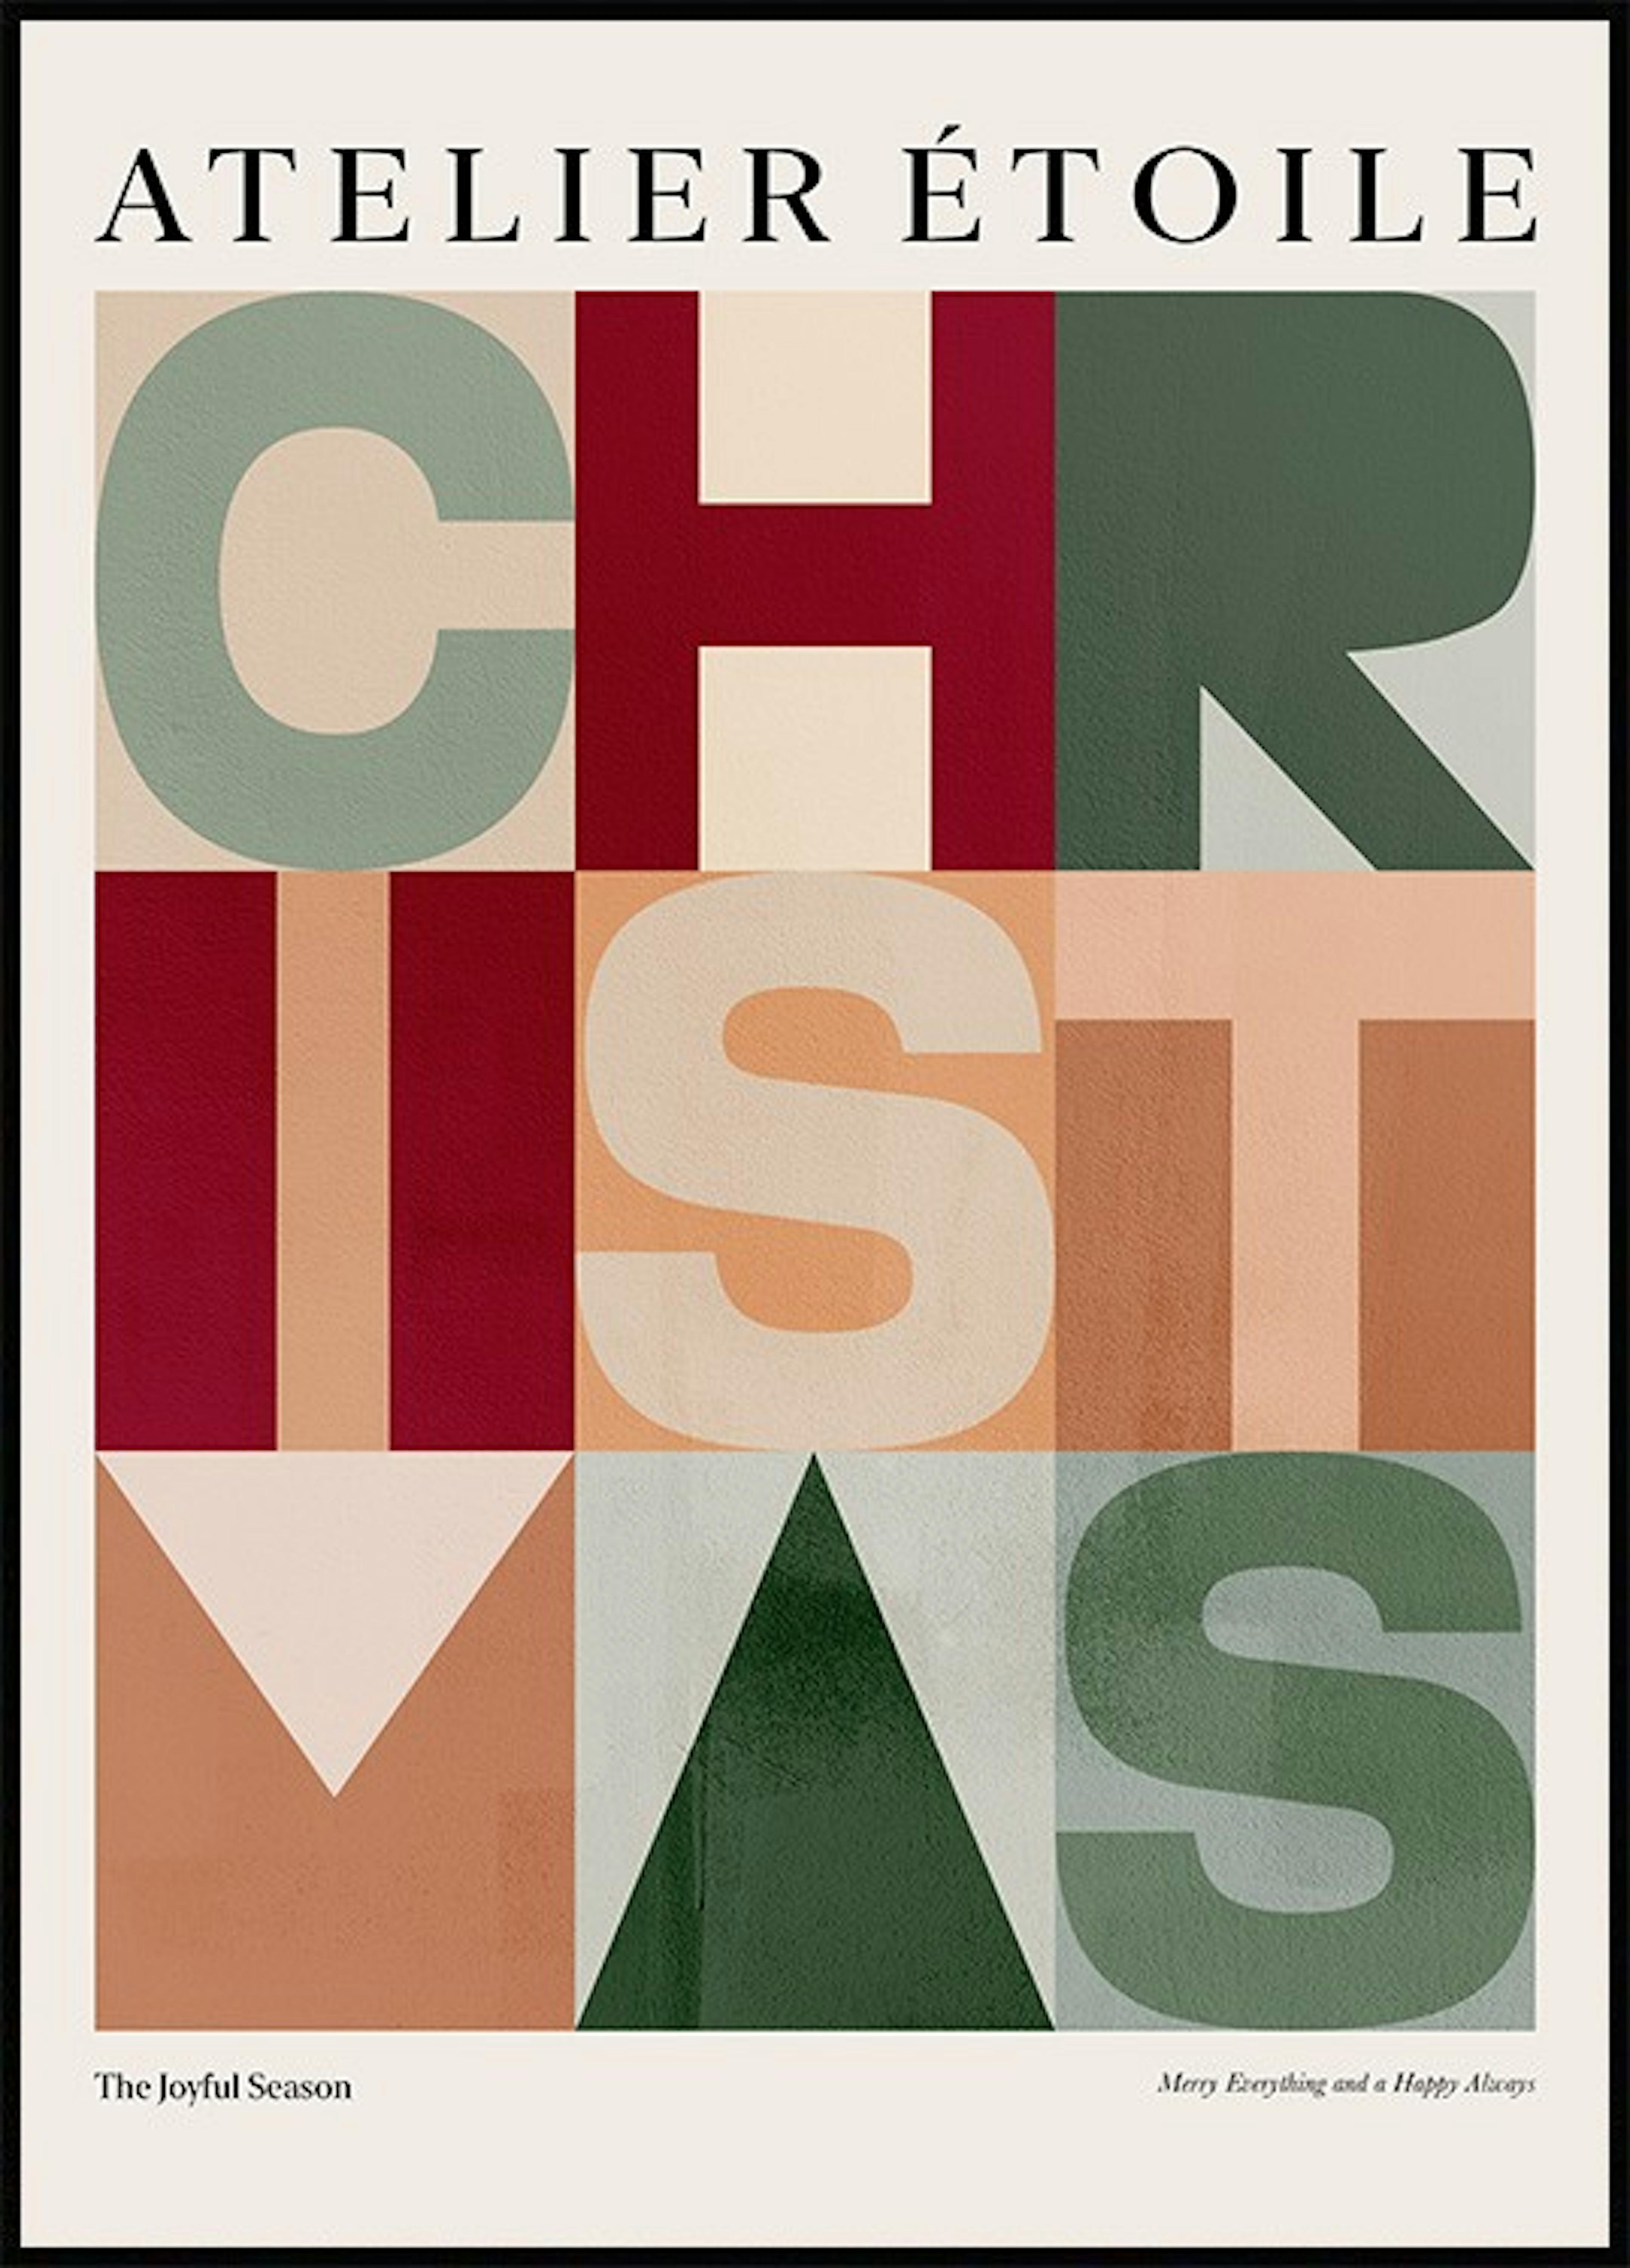 Navidad Paquetes de pósters thumbnail